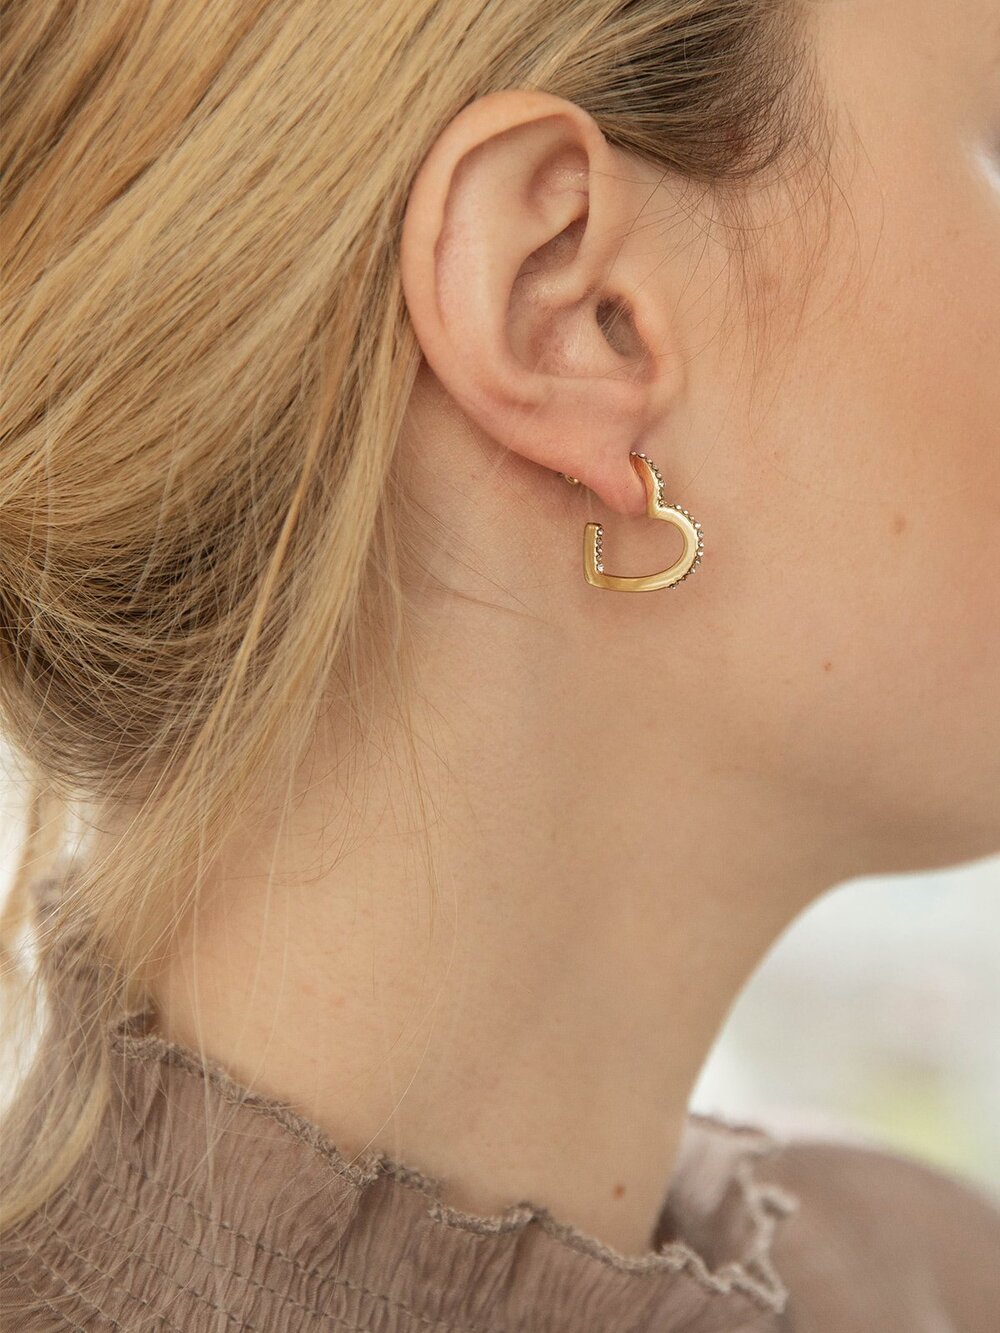 Big Heart Hoop Earrings in Sterling Silver – Silverthaw Jewelry